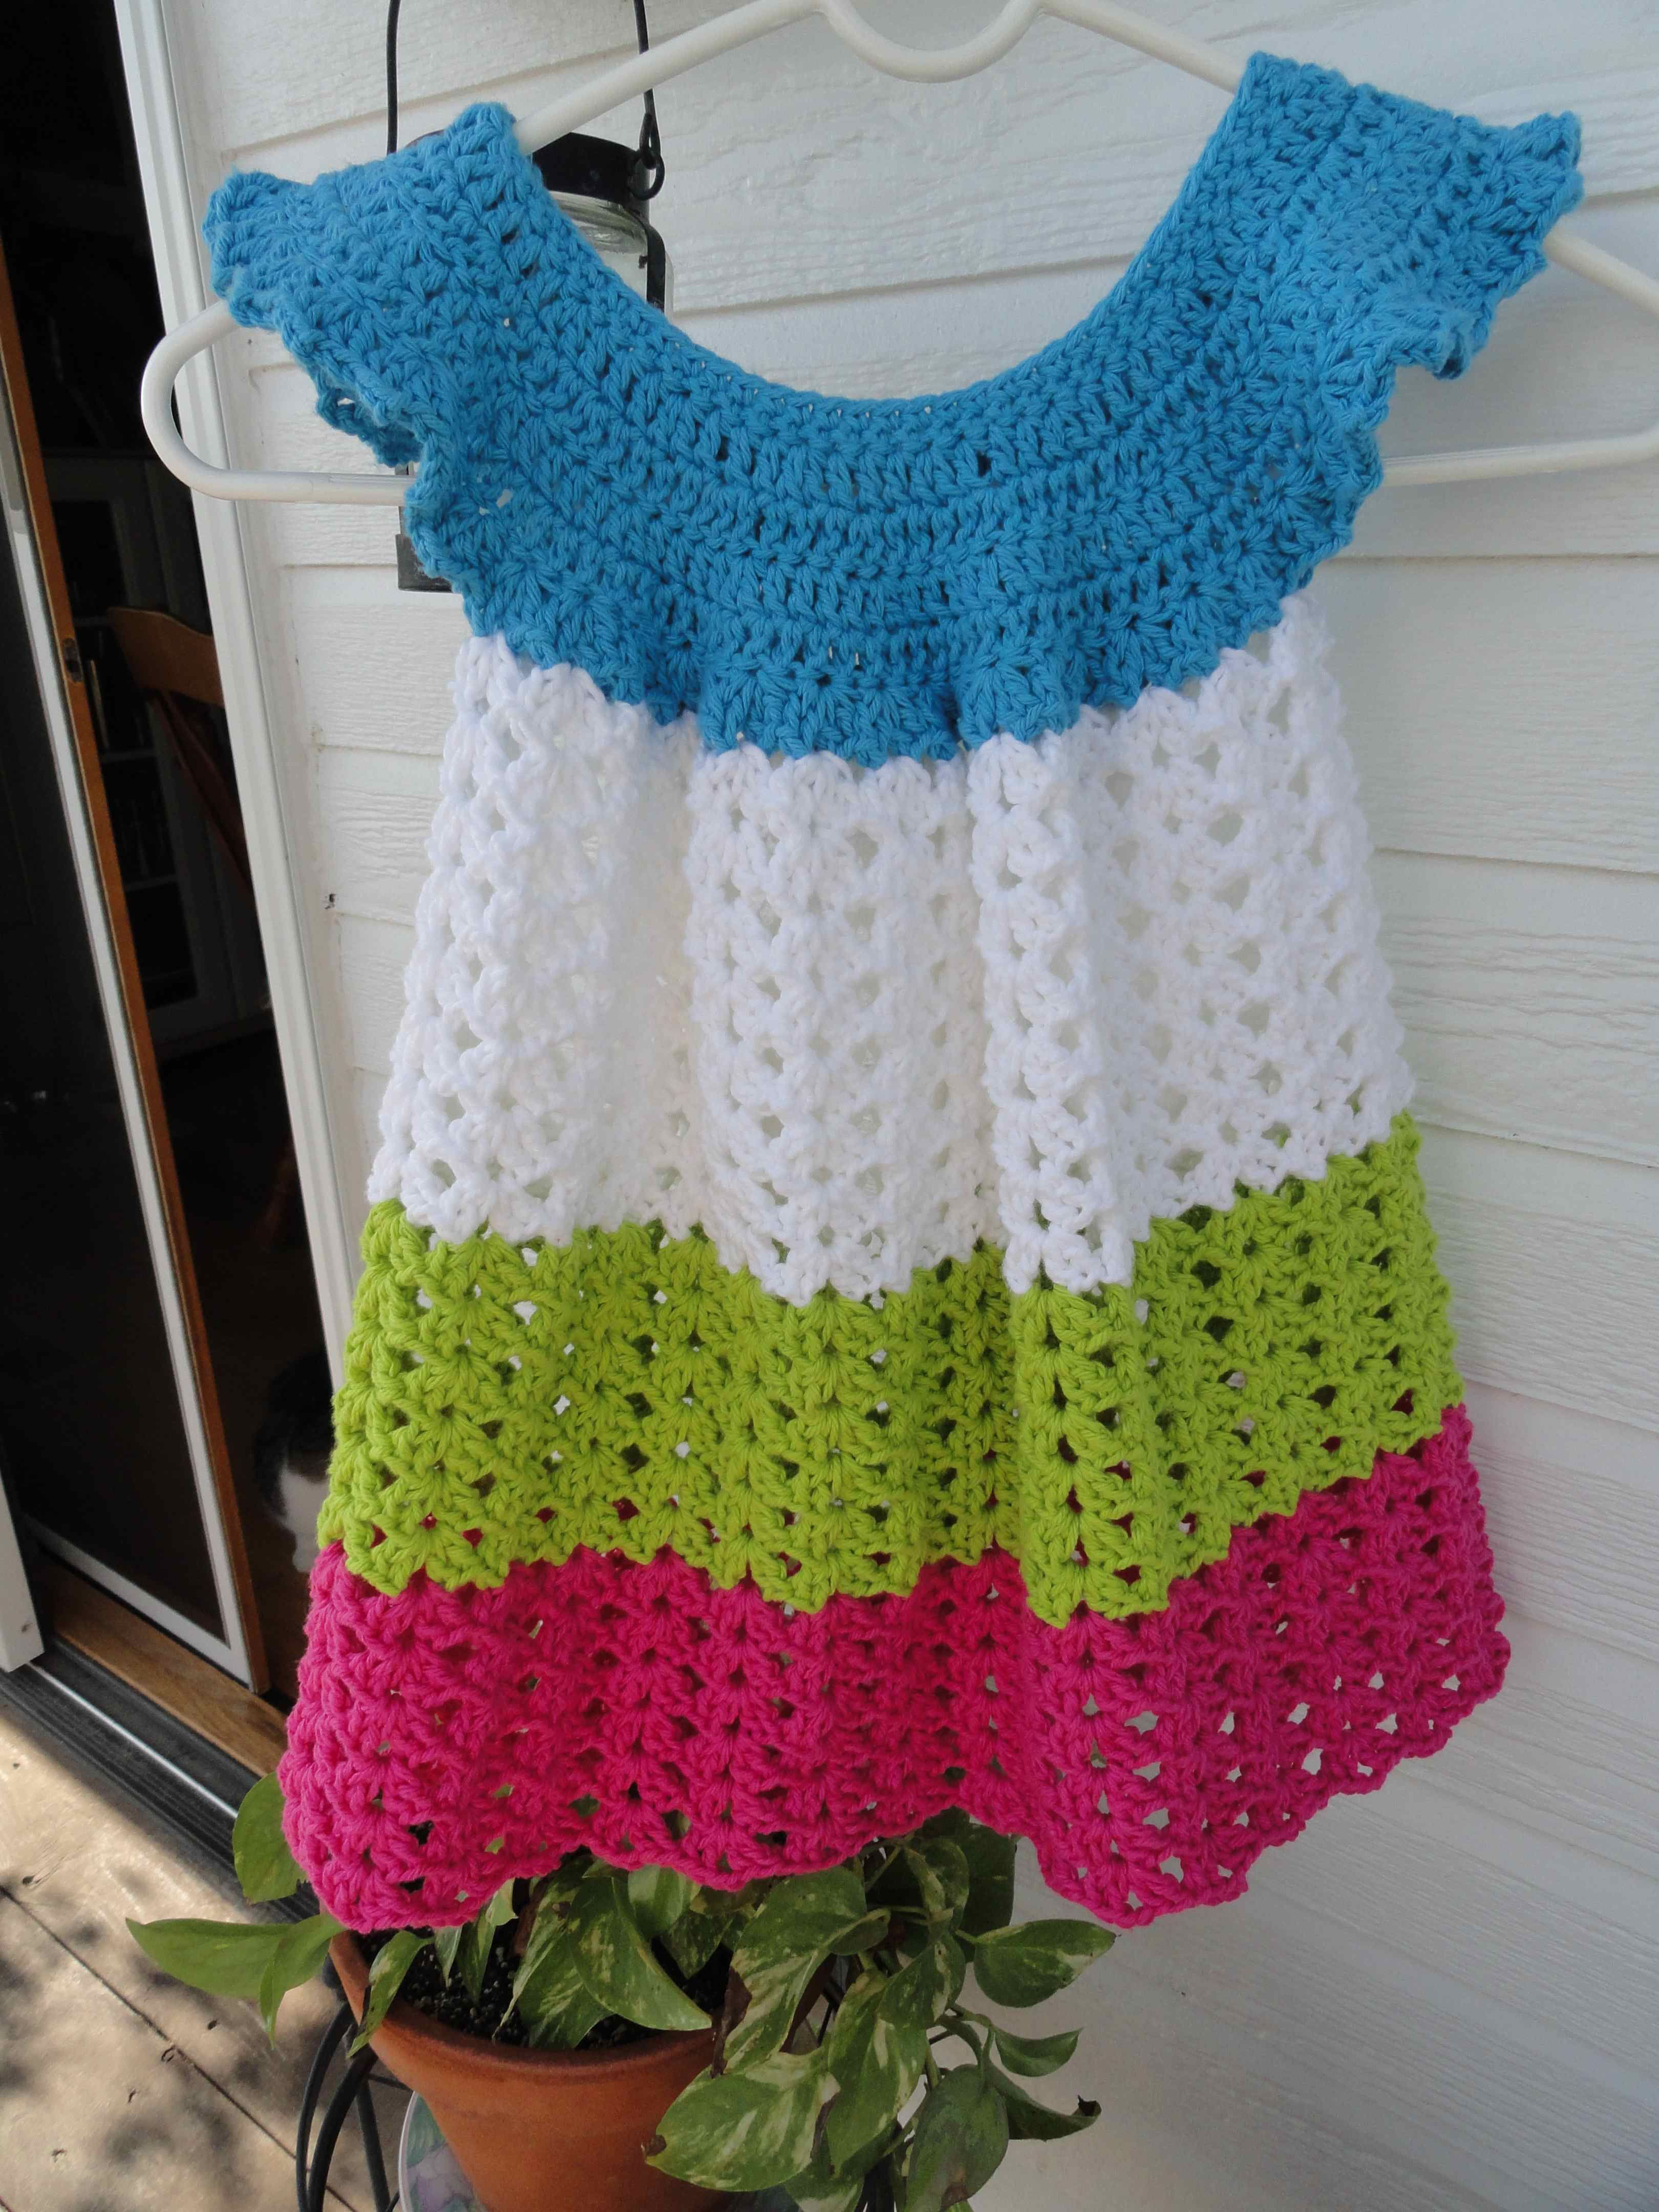 Crochet Toddler Dress Pattern Crochet Toddler Pinafore Handicrafty Pinterest Crochet